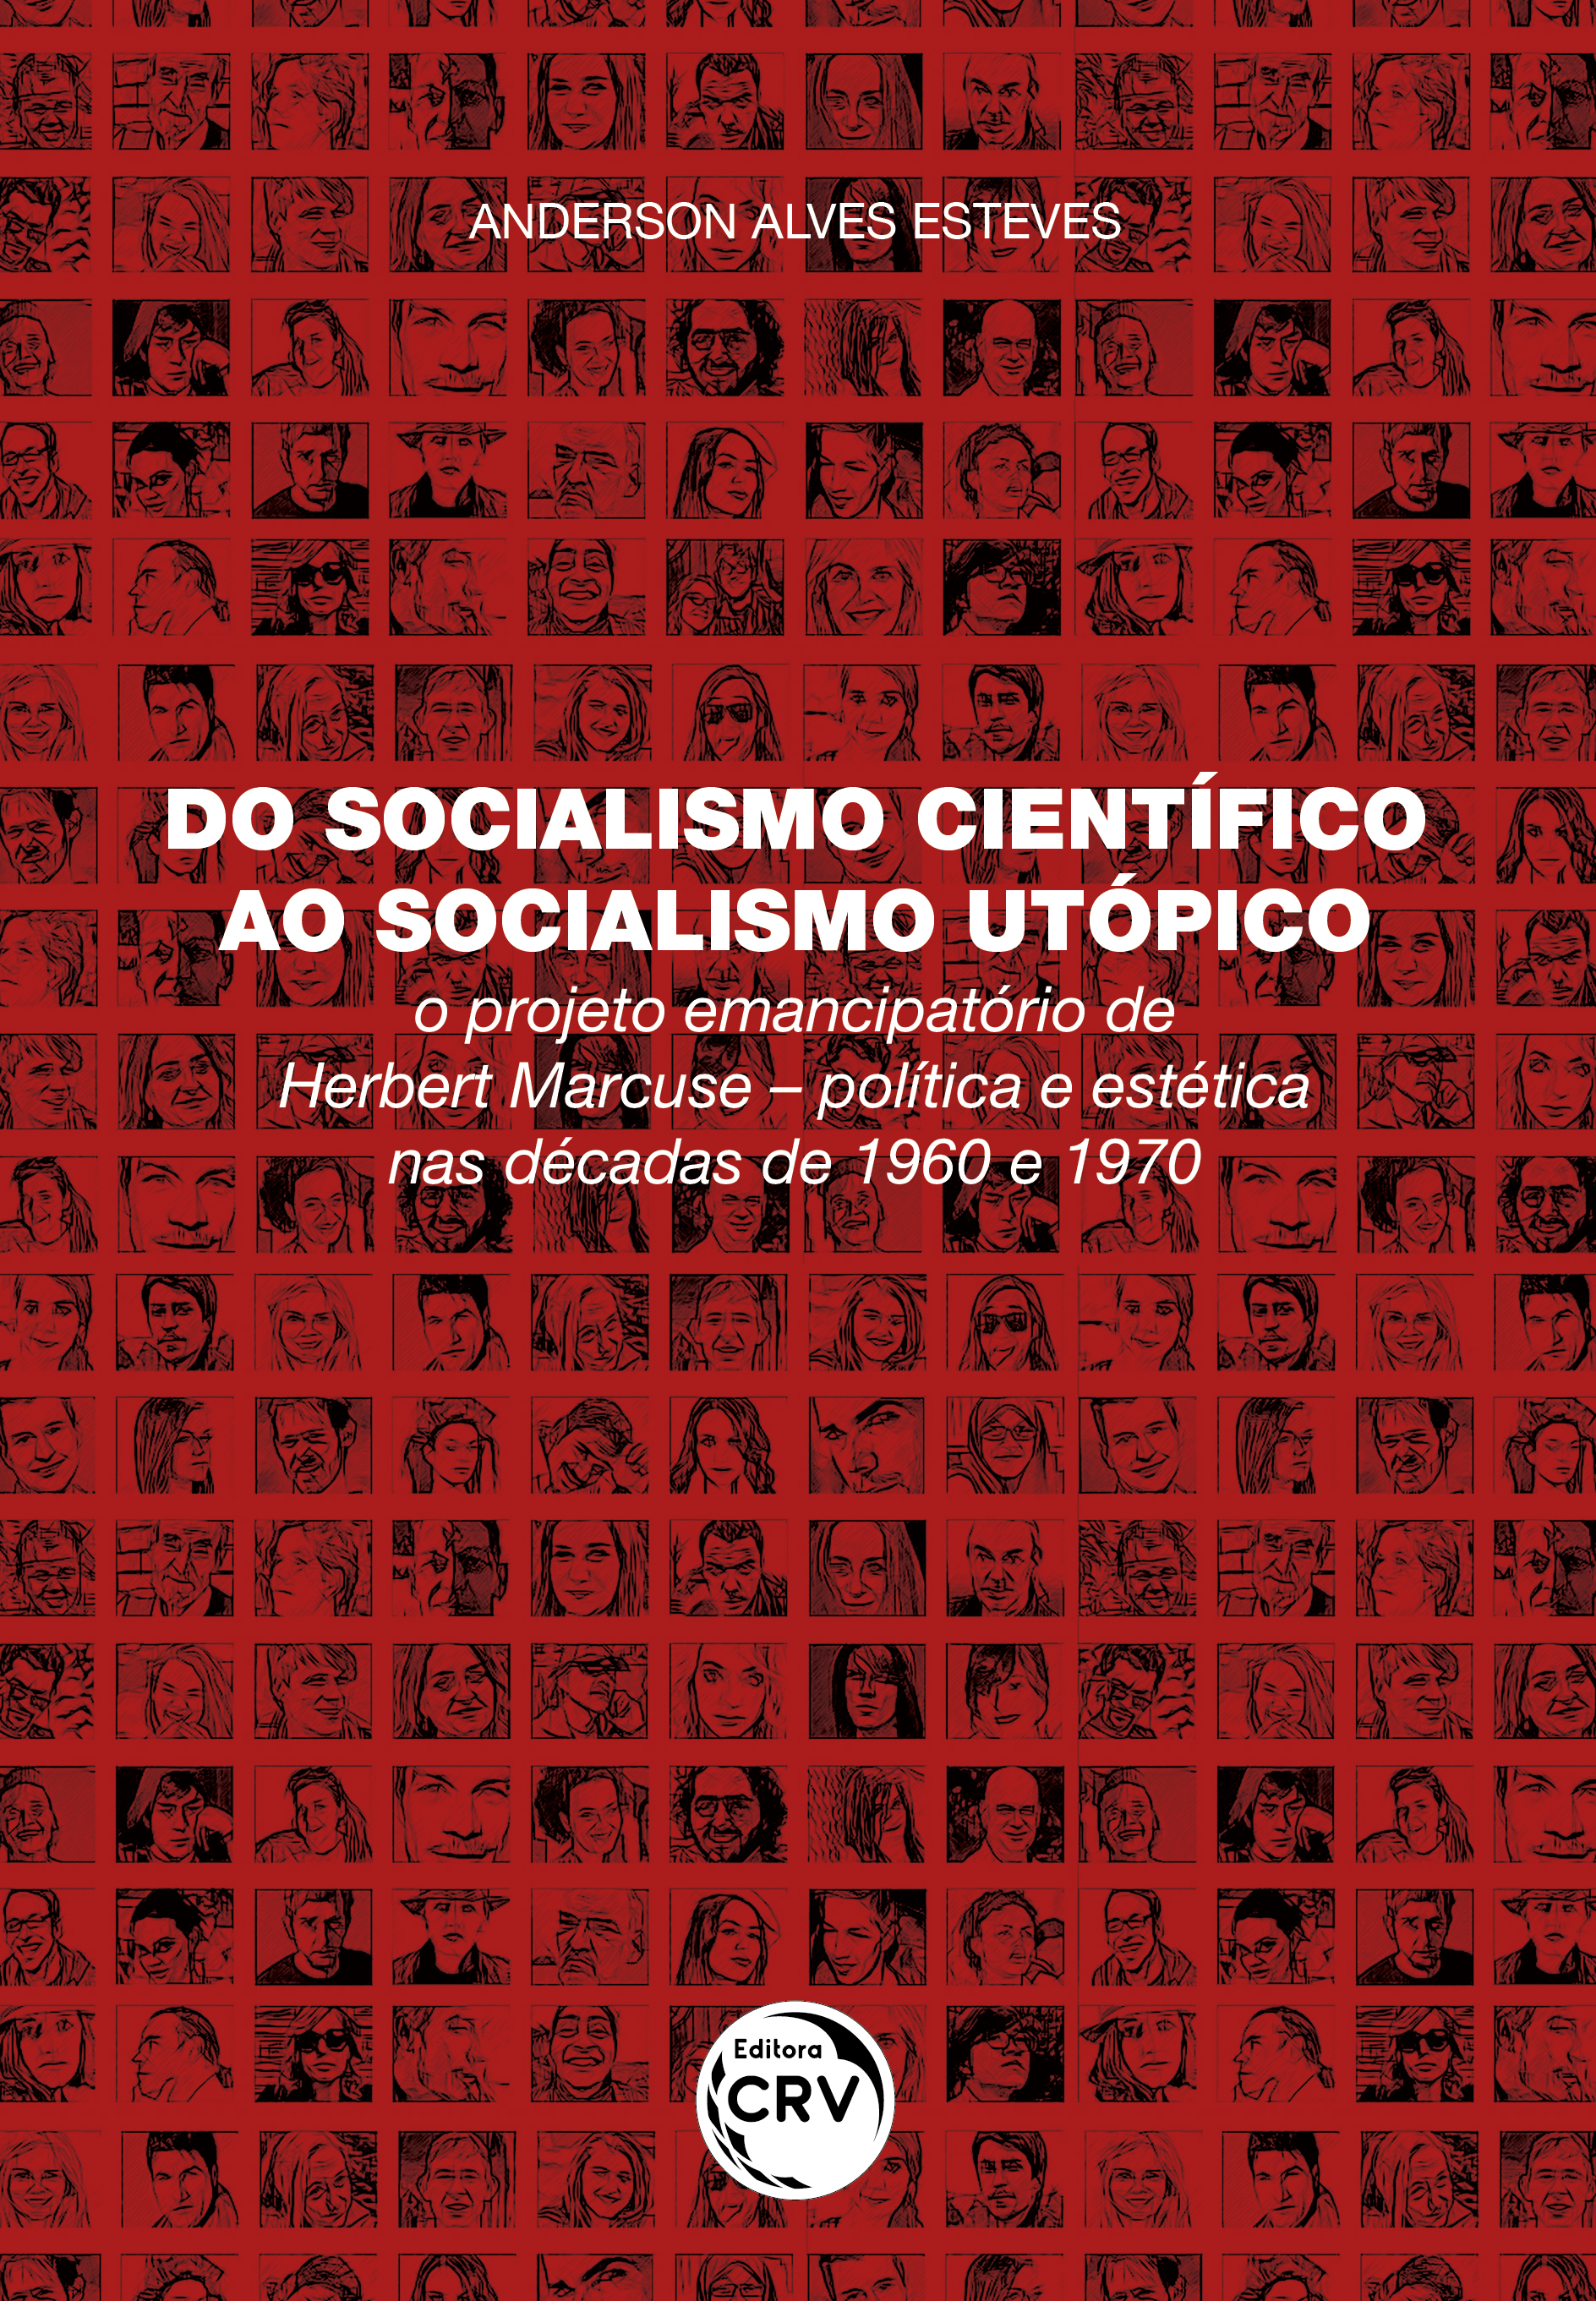 Capa do livro: DO SOCIALISMO CIENTÍFICO AO SOCIALISMO UTÓPICO: <br>o projeto emancipatório de Herbert Marcuse – política e estética nas décadas de 1960 e 1970